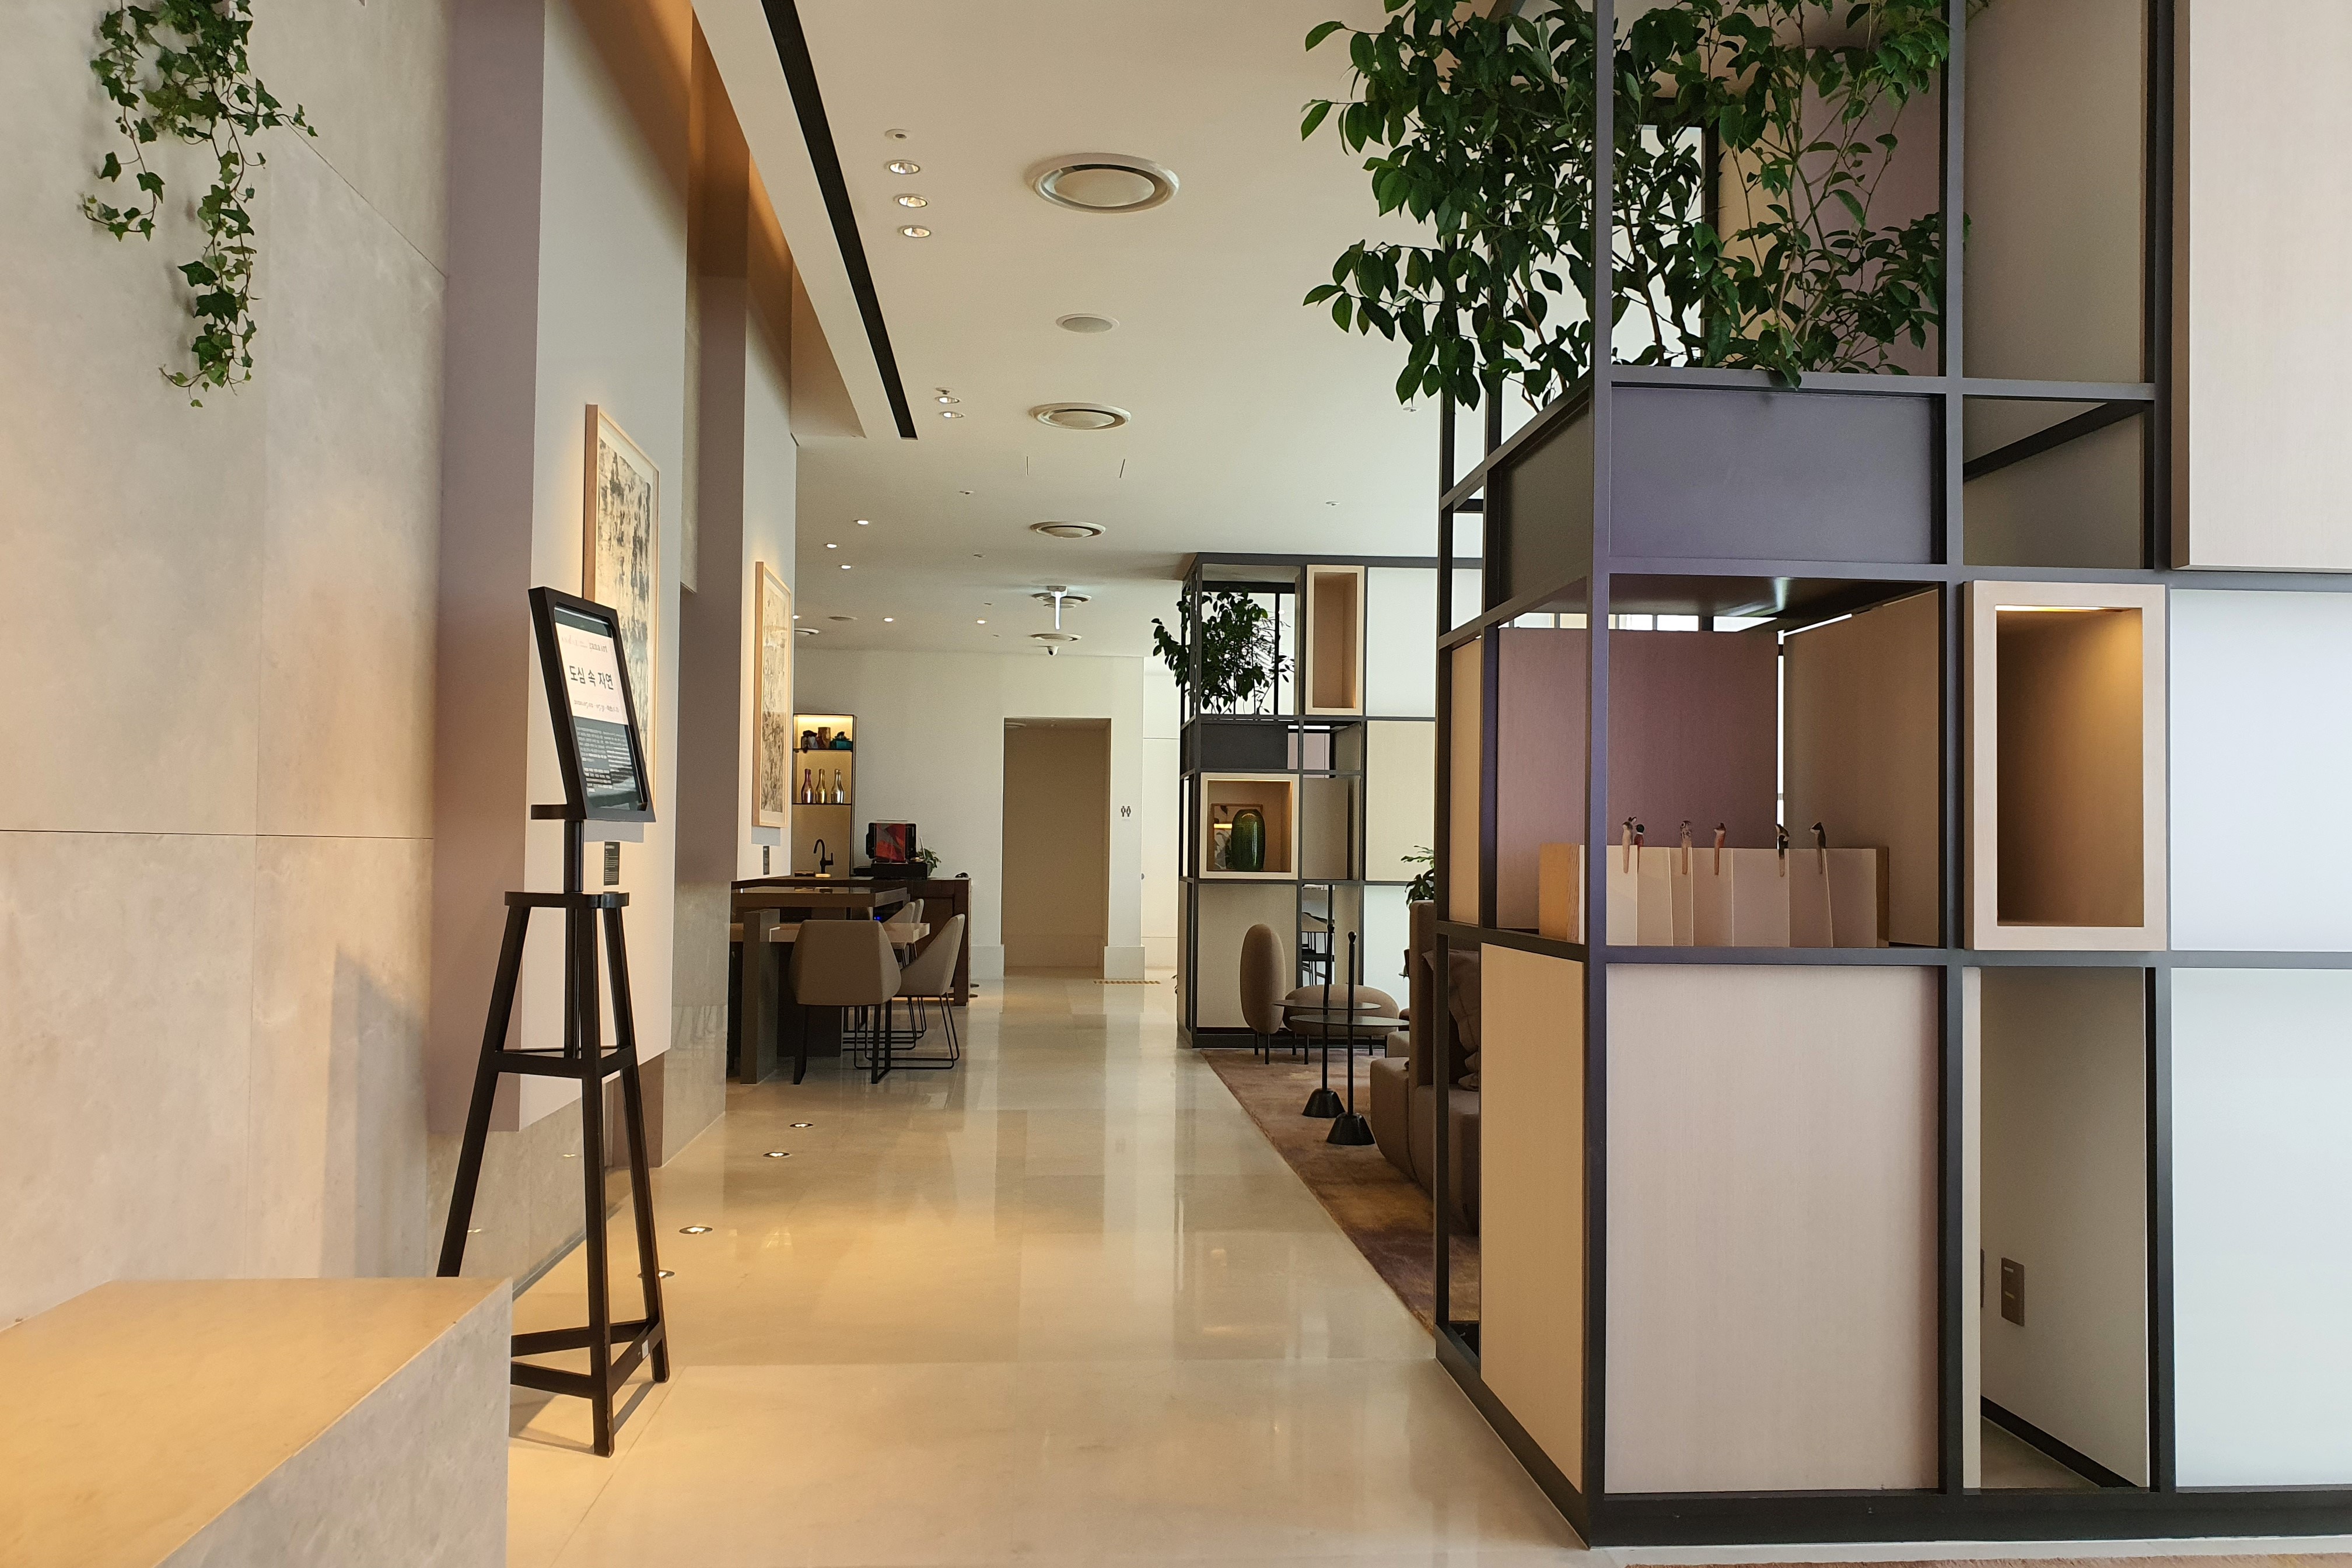 안다즈 서울 강남2 : 기하학적 구조물과 식물로 장식된 현대적인 디자인의 호텔 로비